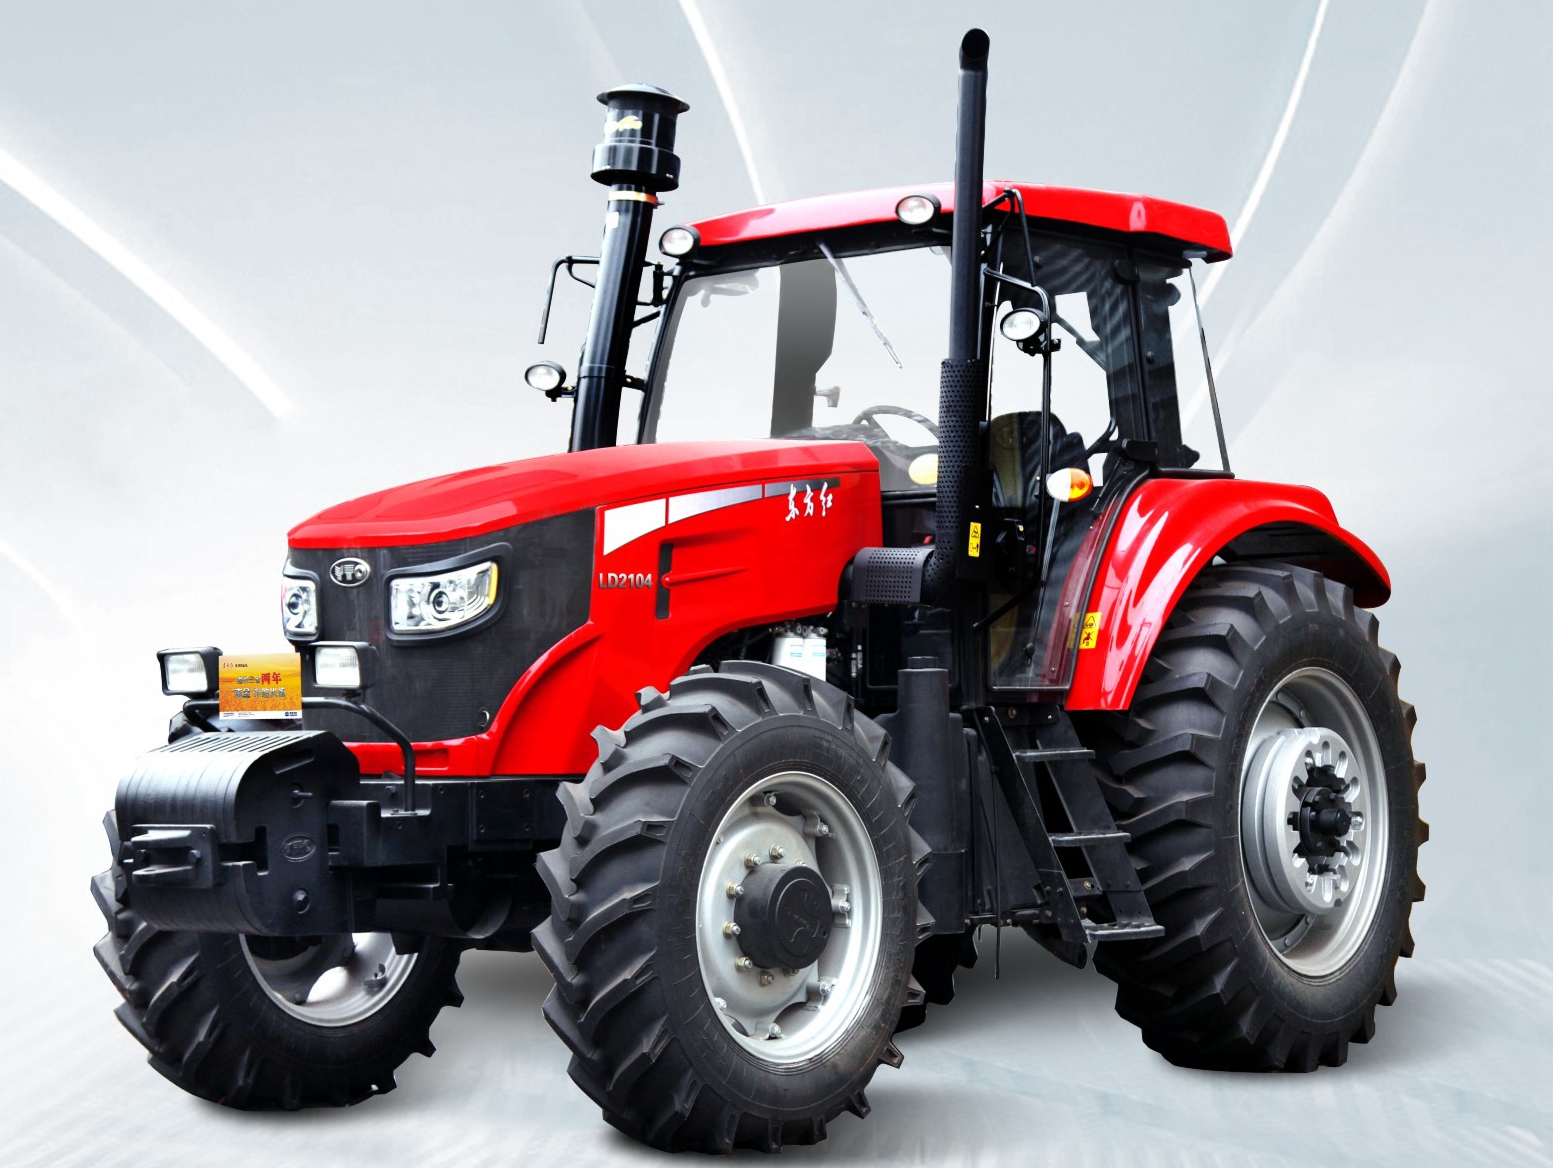 拖拉机自动驾驶 发展智慧农业的重要引擎-丰疆智能